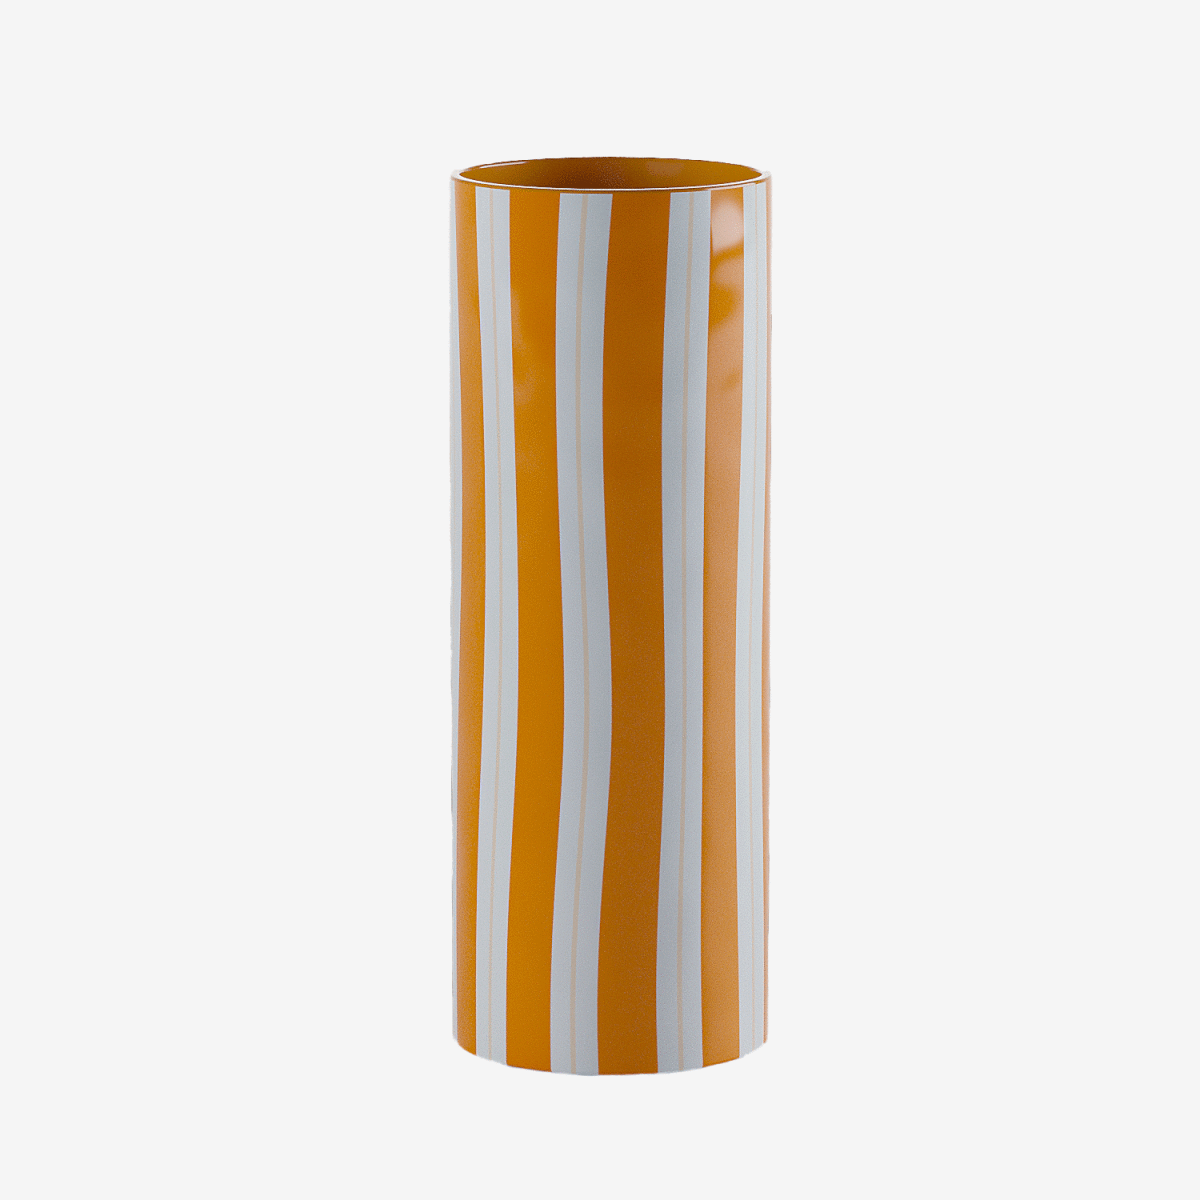 Pratique et élégance, le grand vase cylindrique à rayures orange permet d'embellir avec des grands bouquets de fleurs